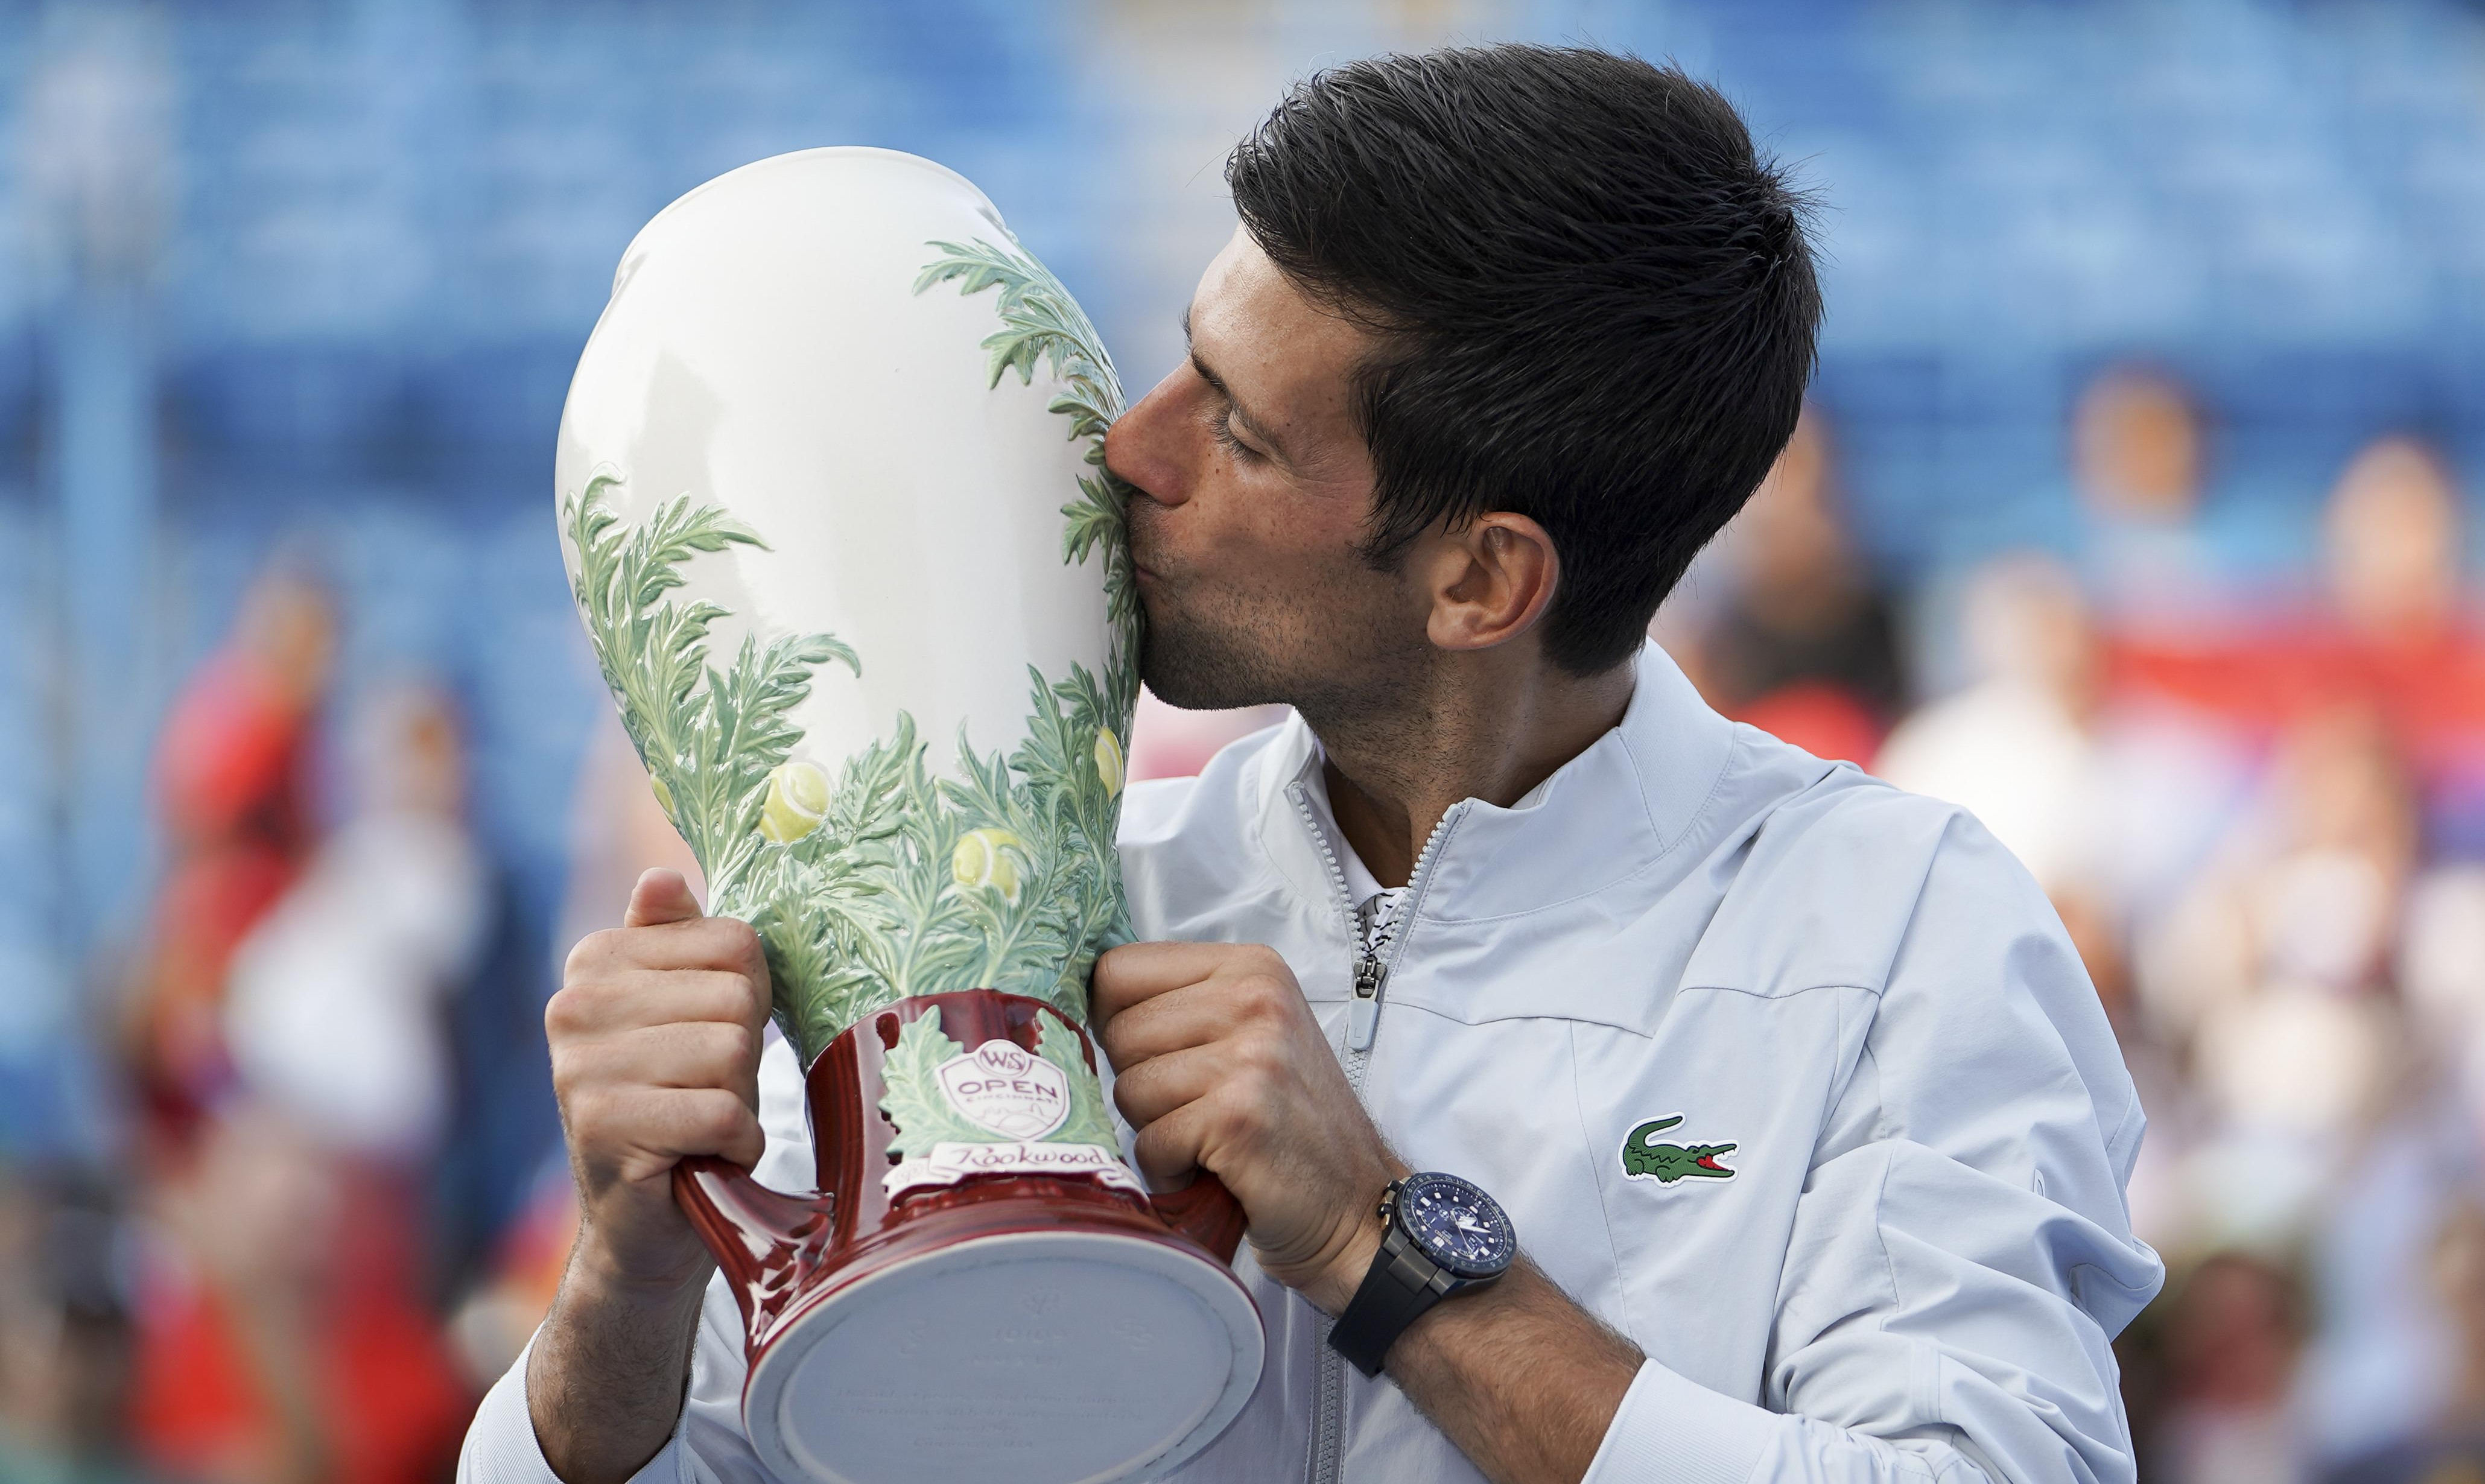 NA OVO ĆU BITI PONOSAN DO KRAJA ŽIVOTA! Novak posle Zlatnog mastersa pokazao koliko poštuje Federera i Nadala!